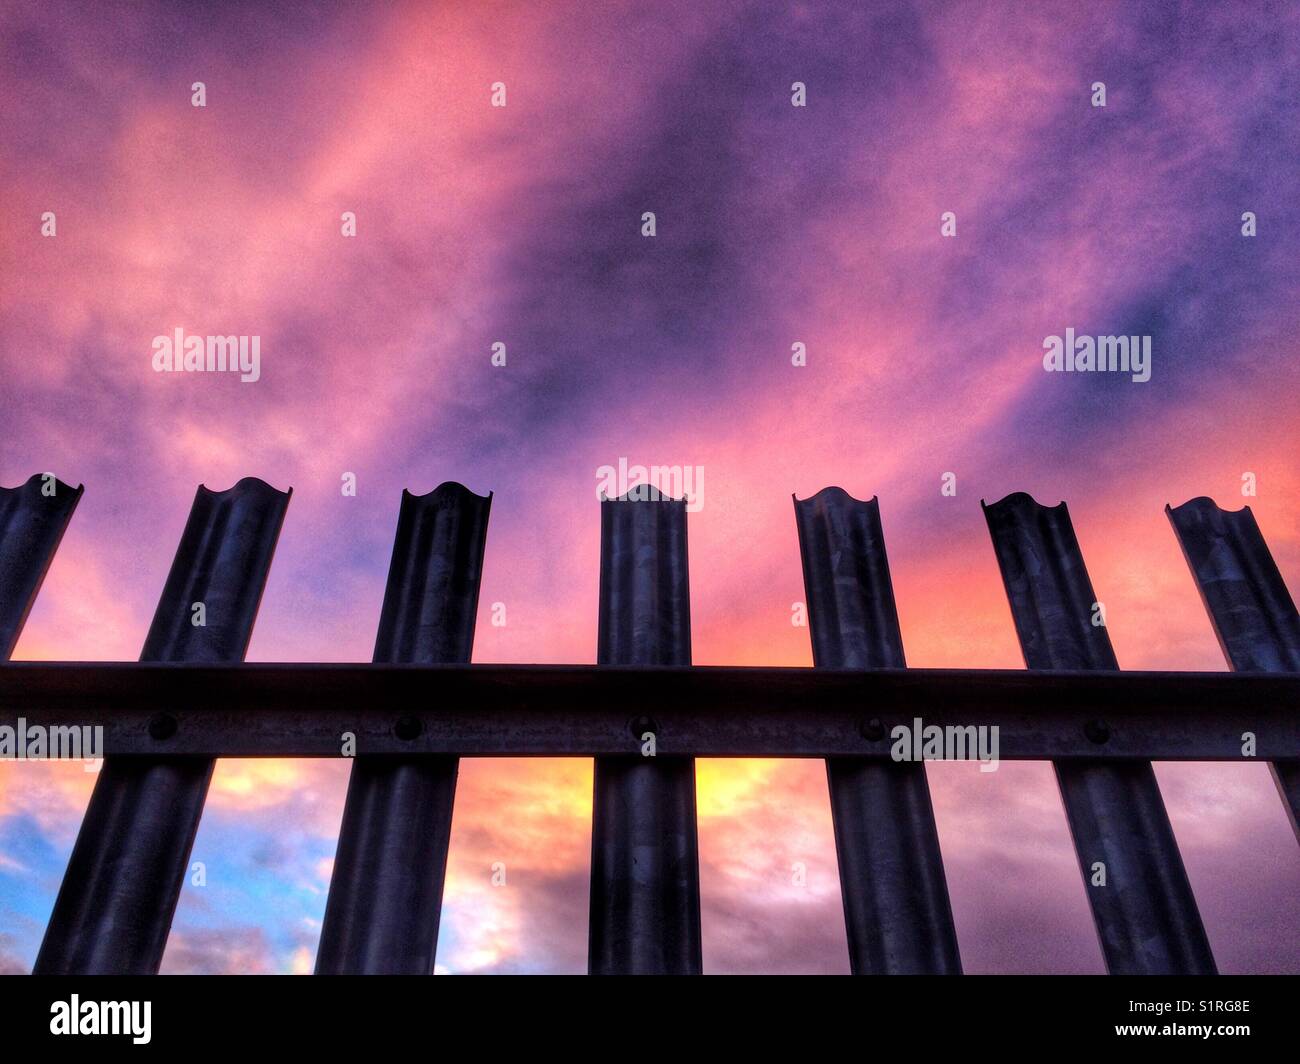 Ein hartes Metall Zaun, die Entbindung unter einem bunten Sonnenuntergang Himmel Stockfoto